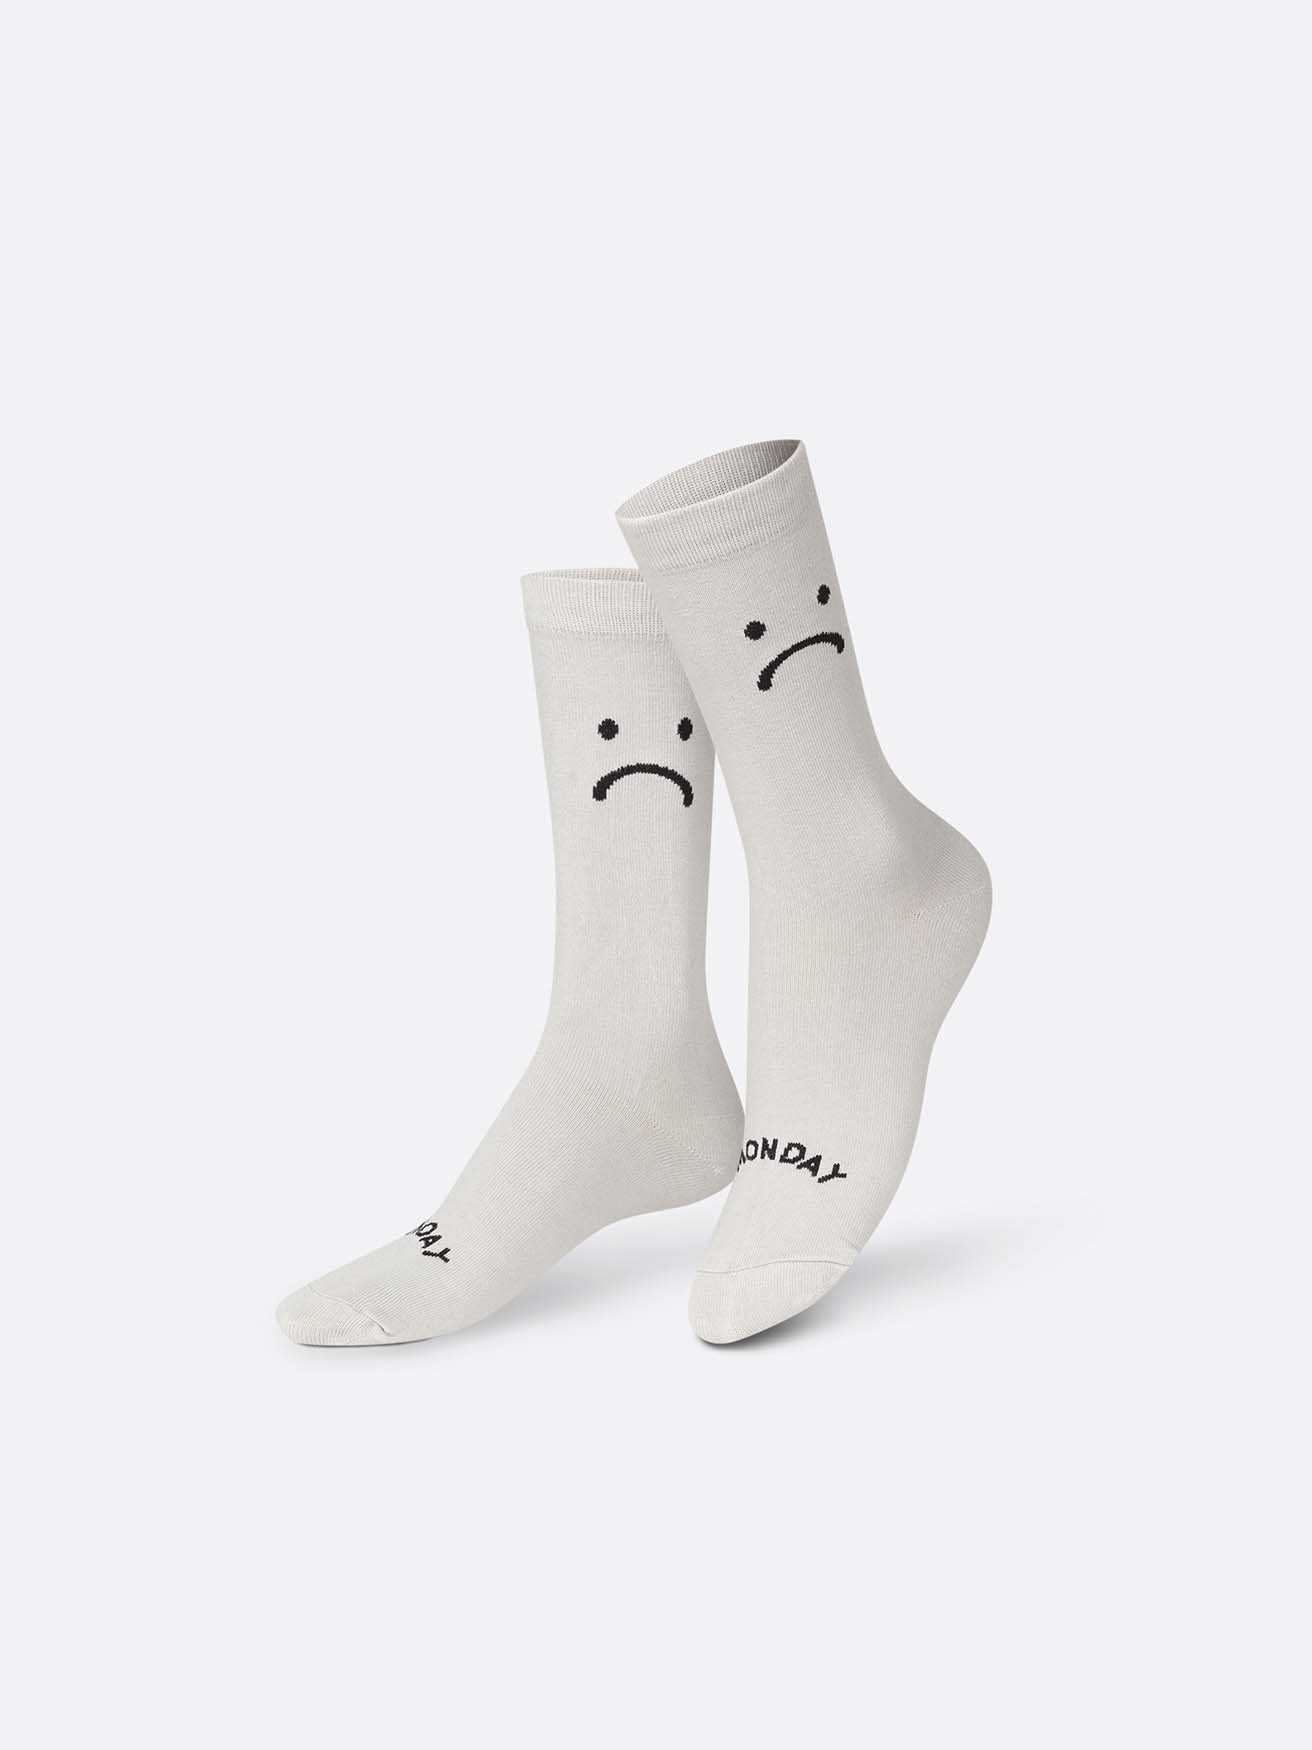 
                  
                    Montag-Freitag-Socken
                  
                